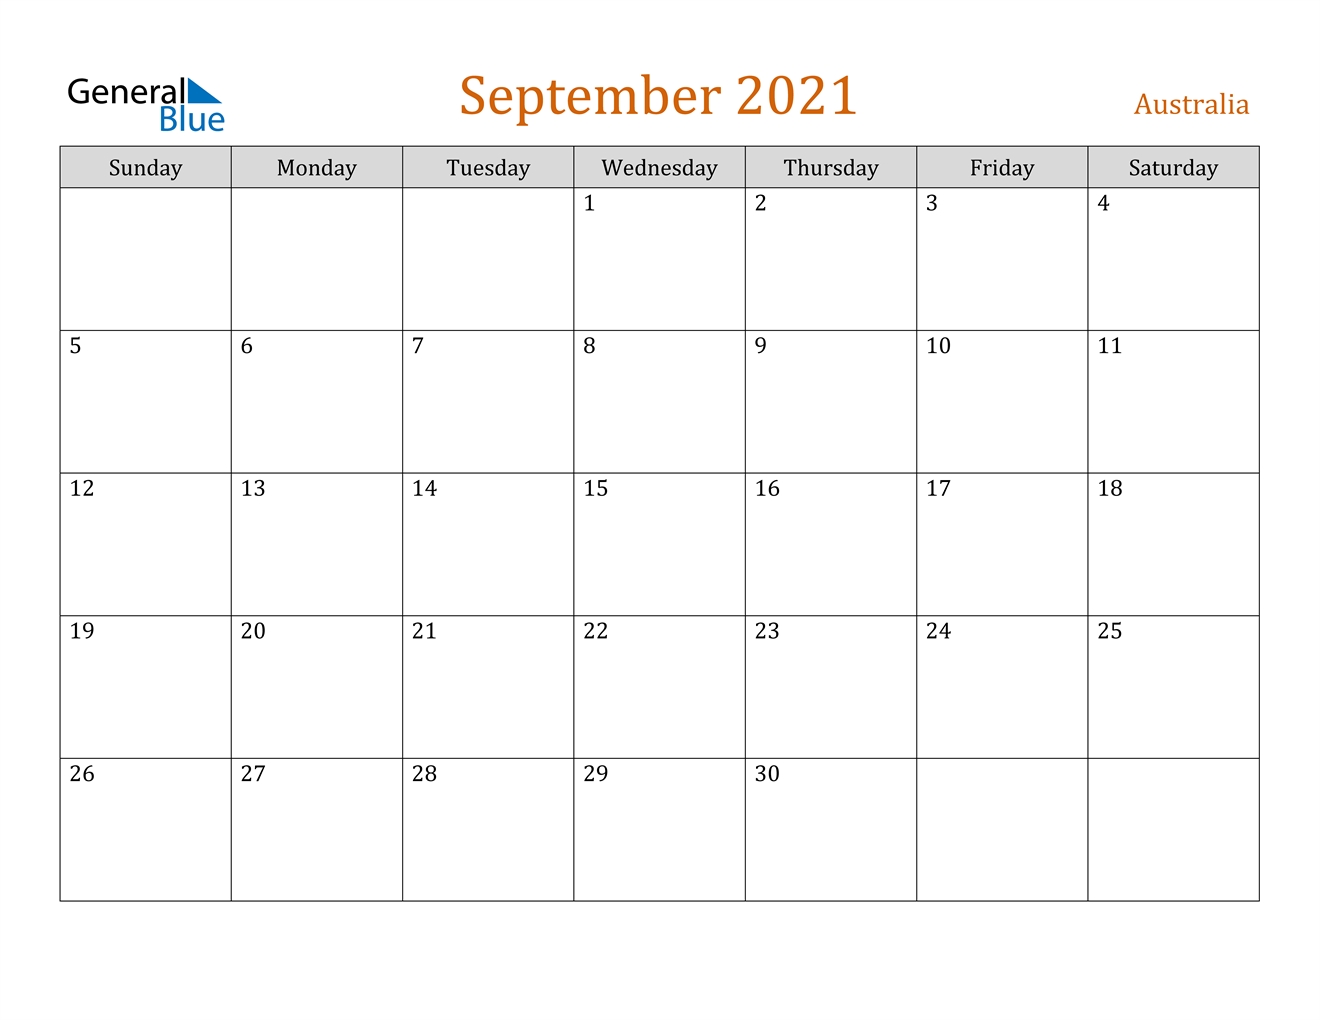 September 2021 Calendar - Australia